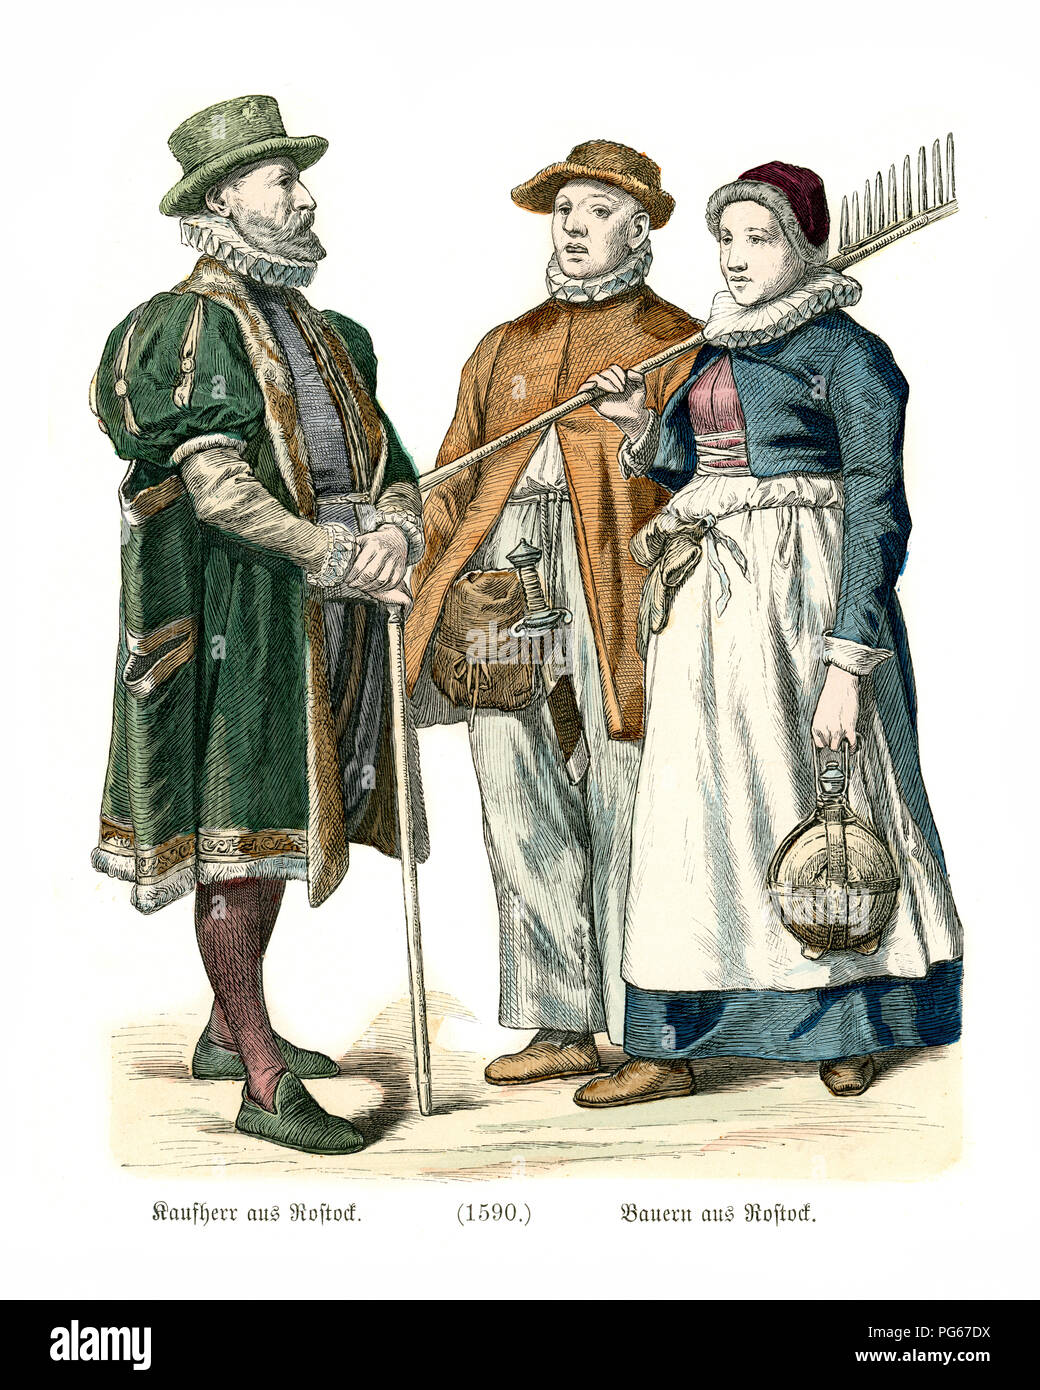 Mode des späten 16. Jahrhundert in Deutschland. Männer und Frauen aus  Rostock, Mecklenburg-Vorpommern, Deutschland Stockfotografie - Alamy